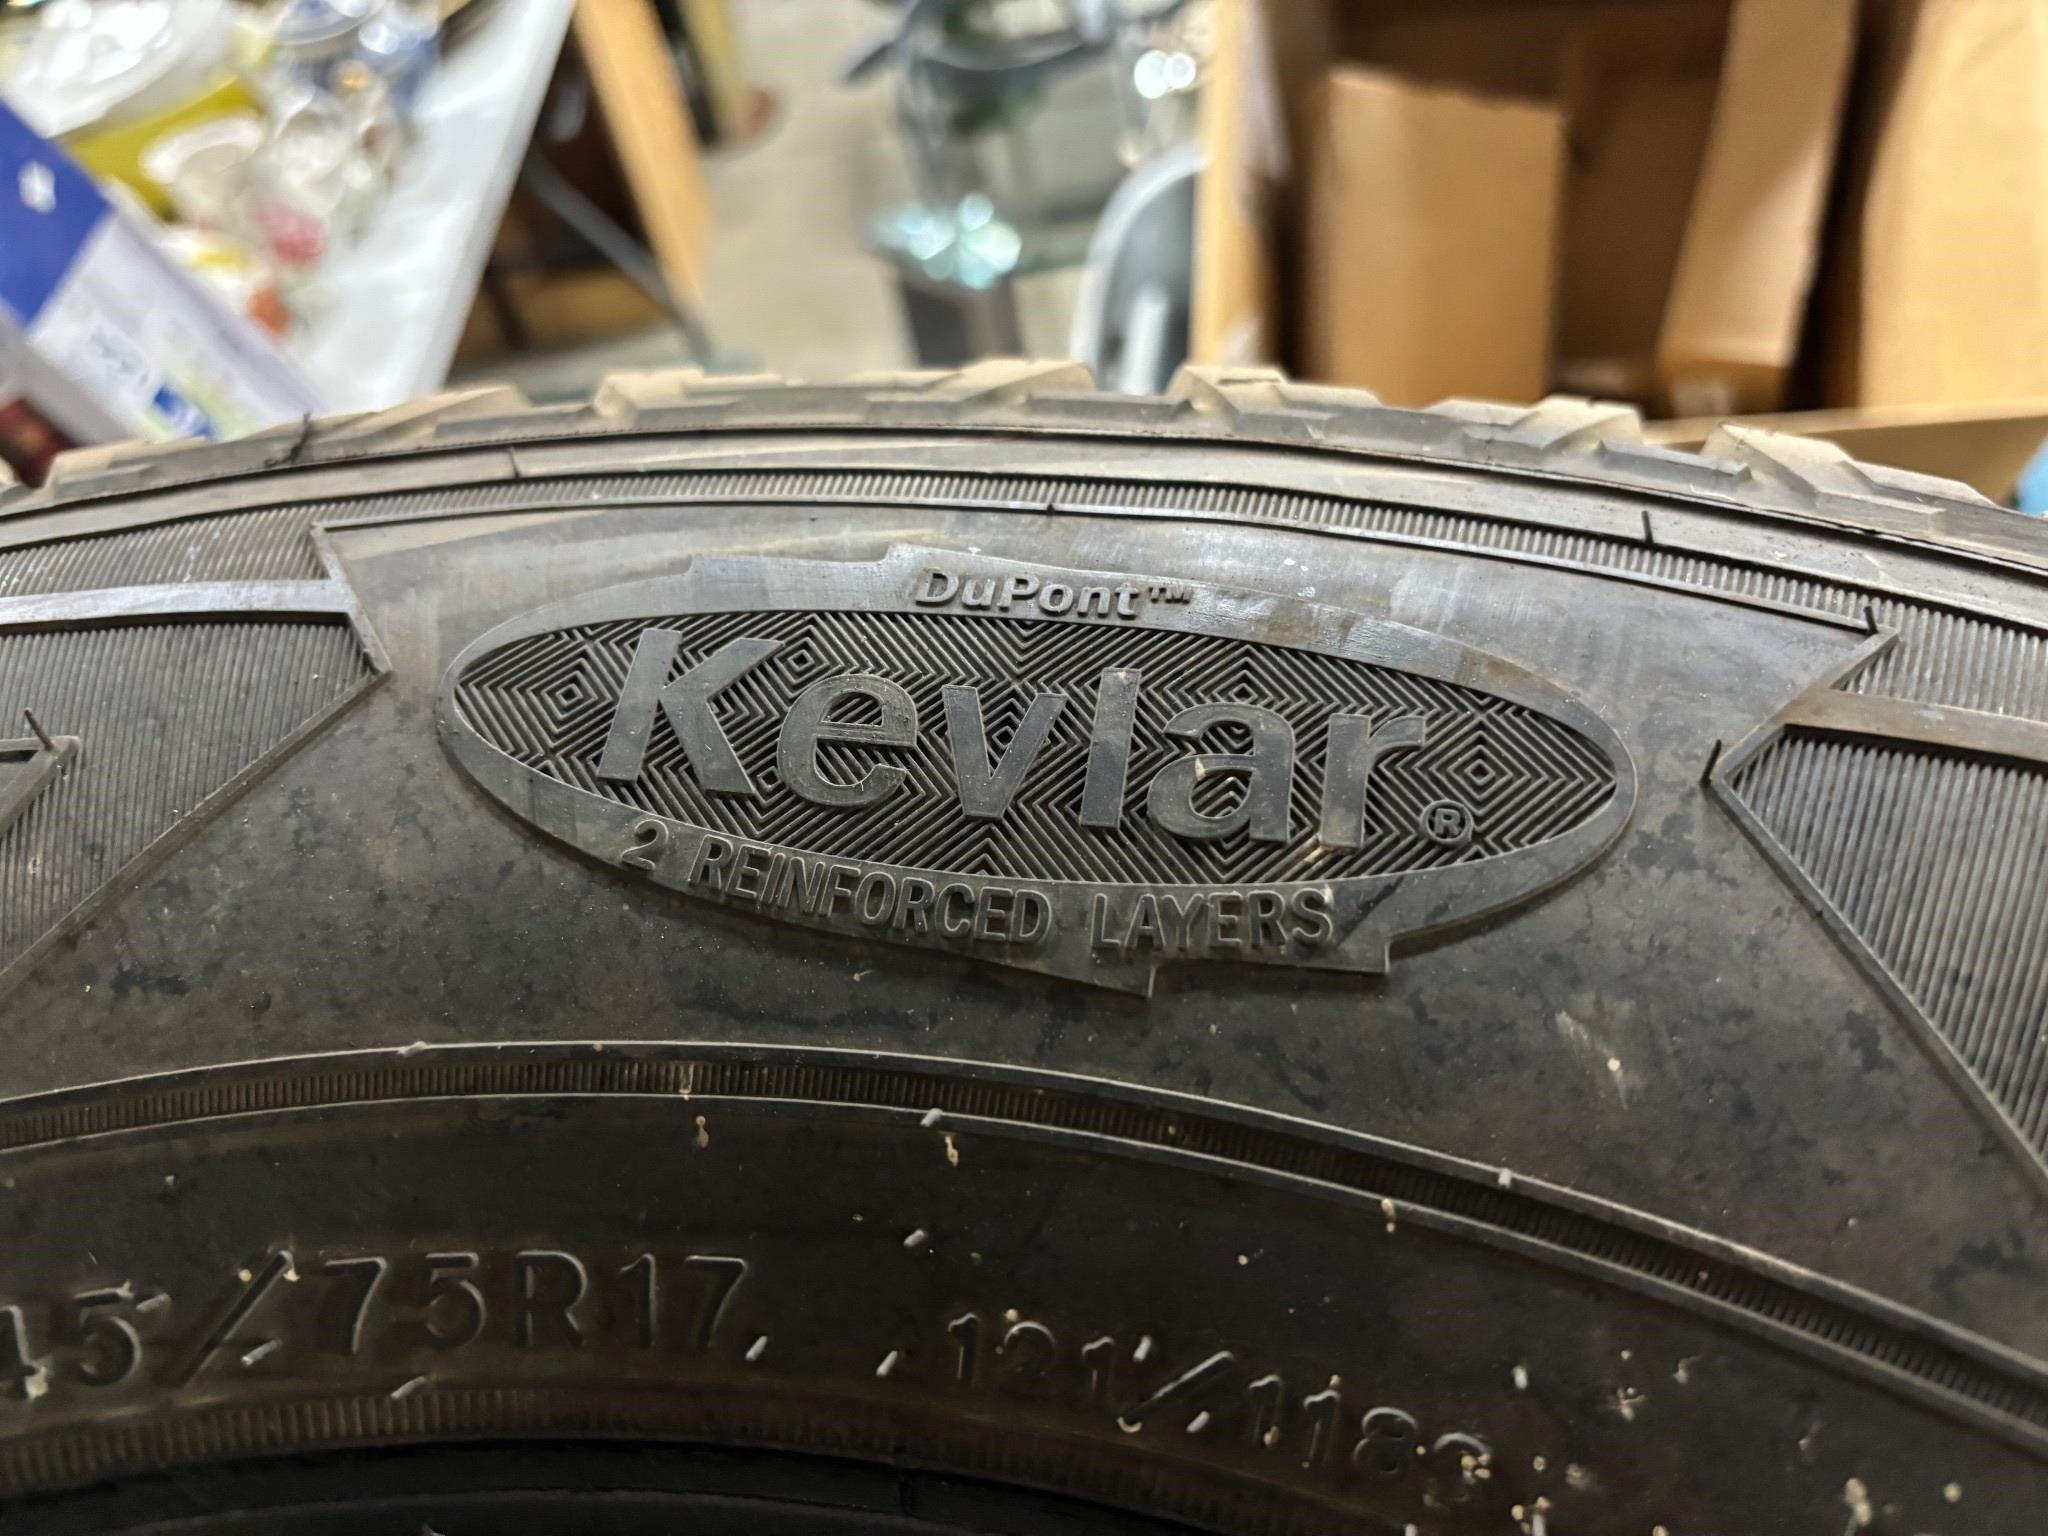 Kevlar Good Year Tires Qty 6 - LT-245/75R17